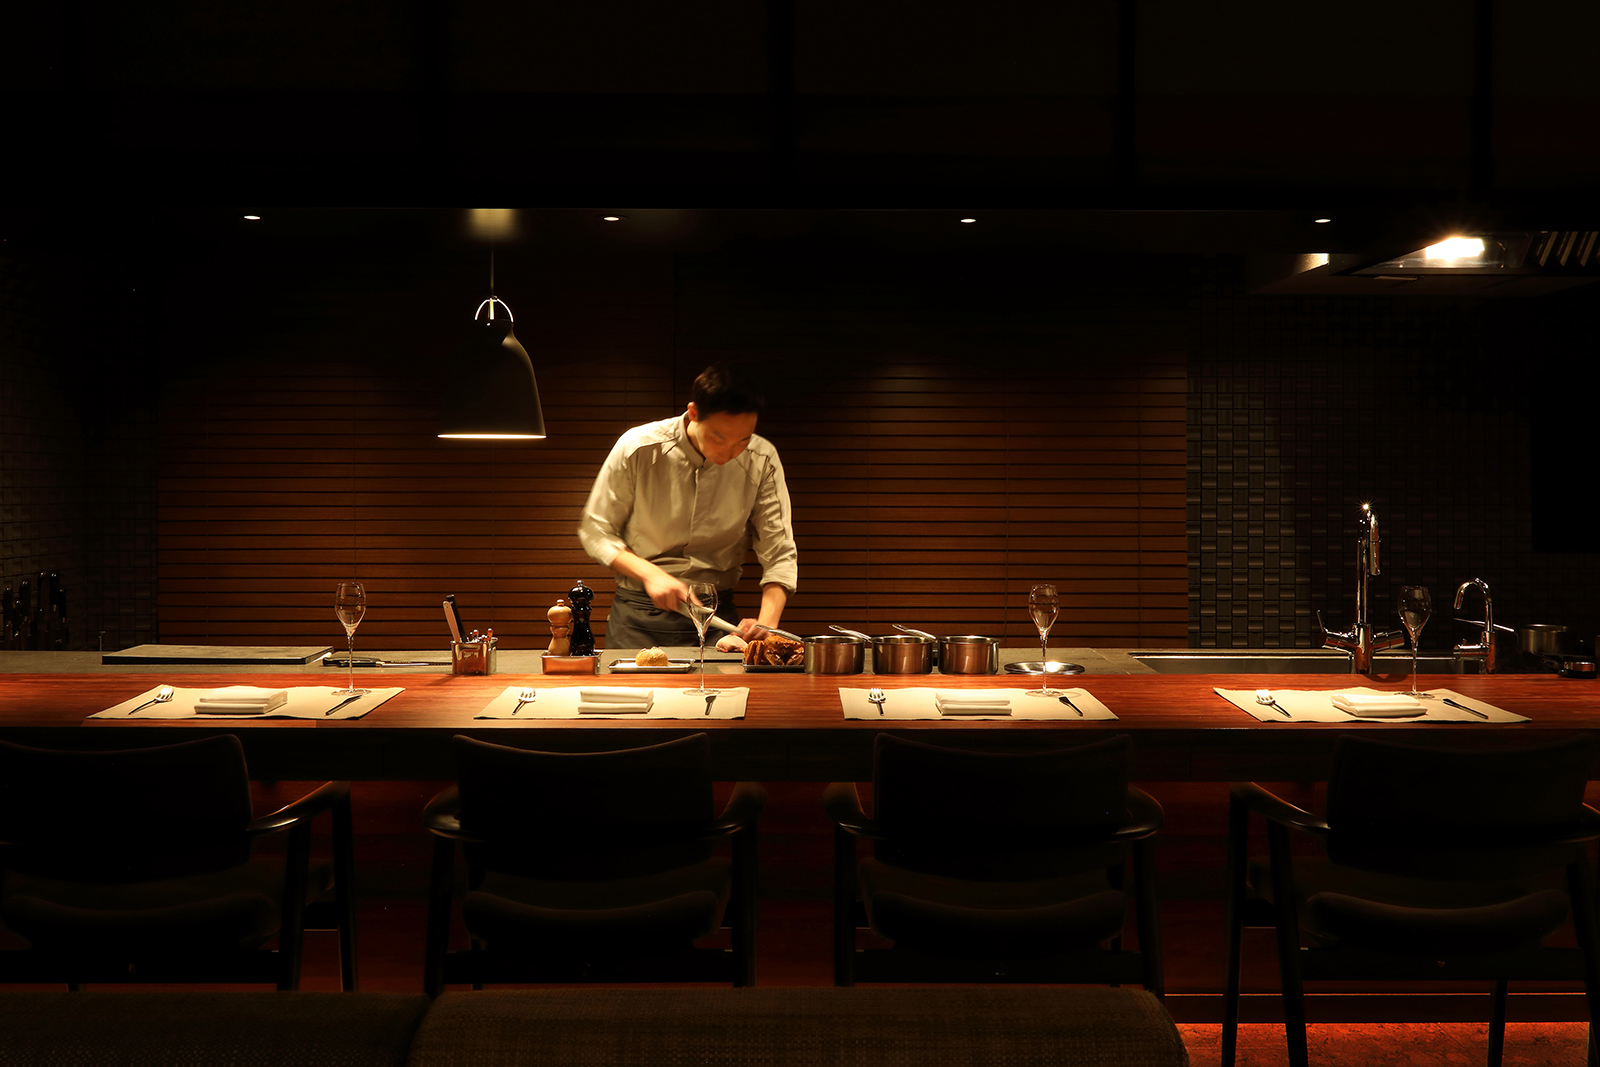 特別なひと時を楽しむ、一日一組のプライベートレストラン 「Saucer(ソーセ)」恵比寿にオープン！